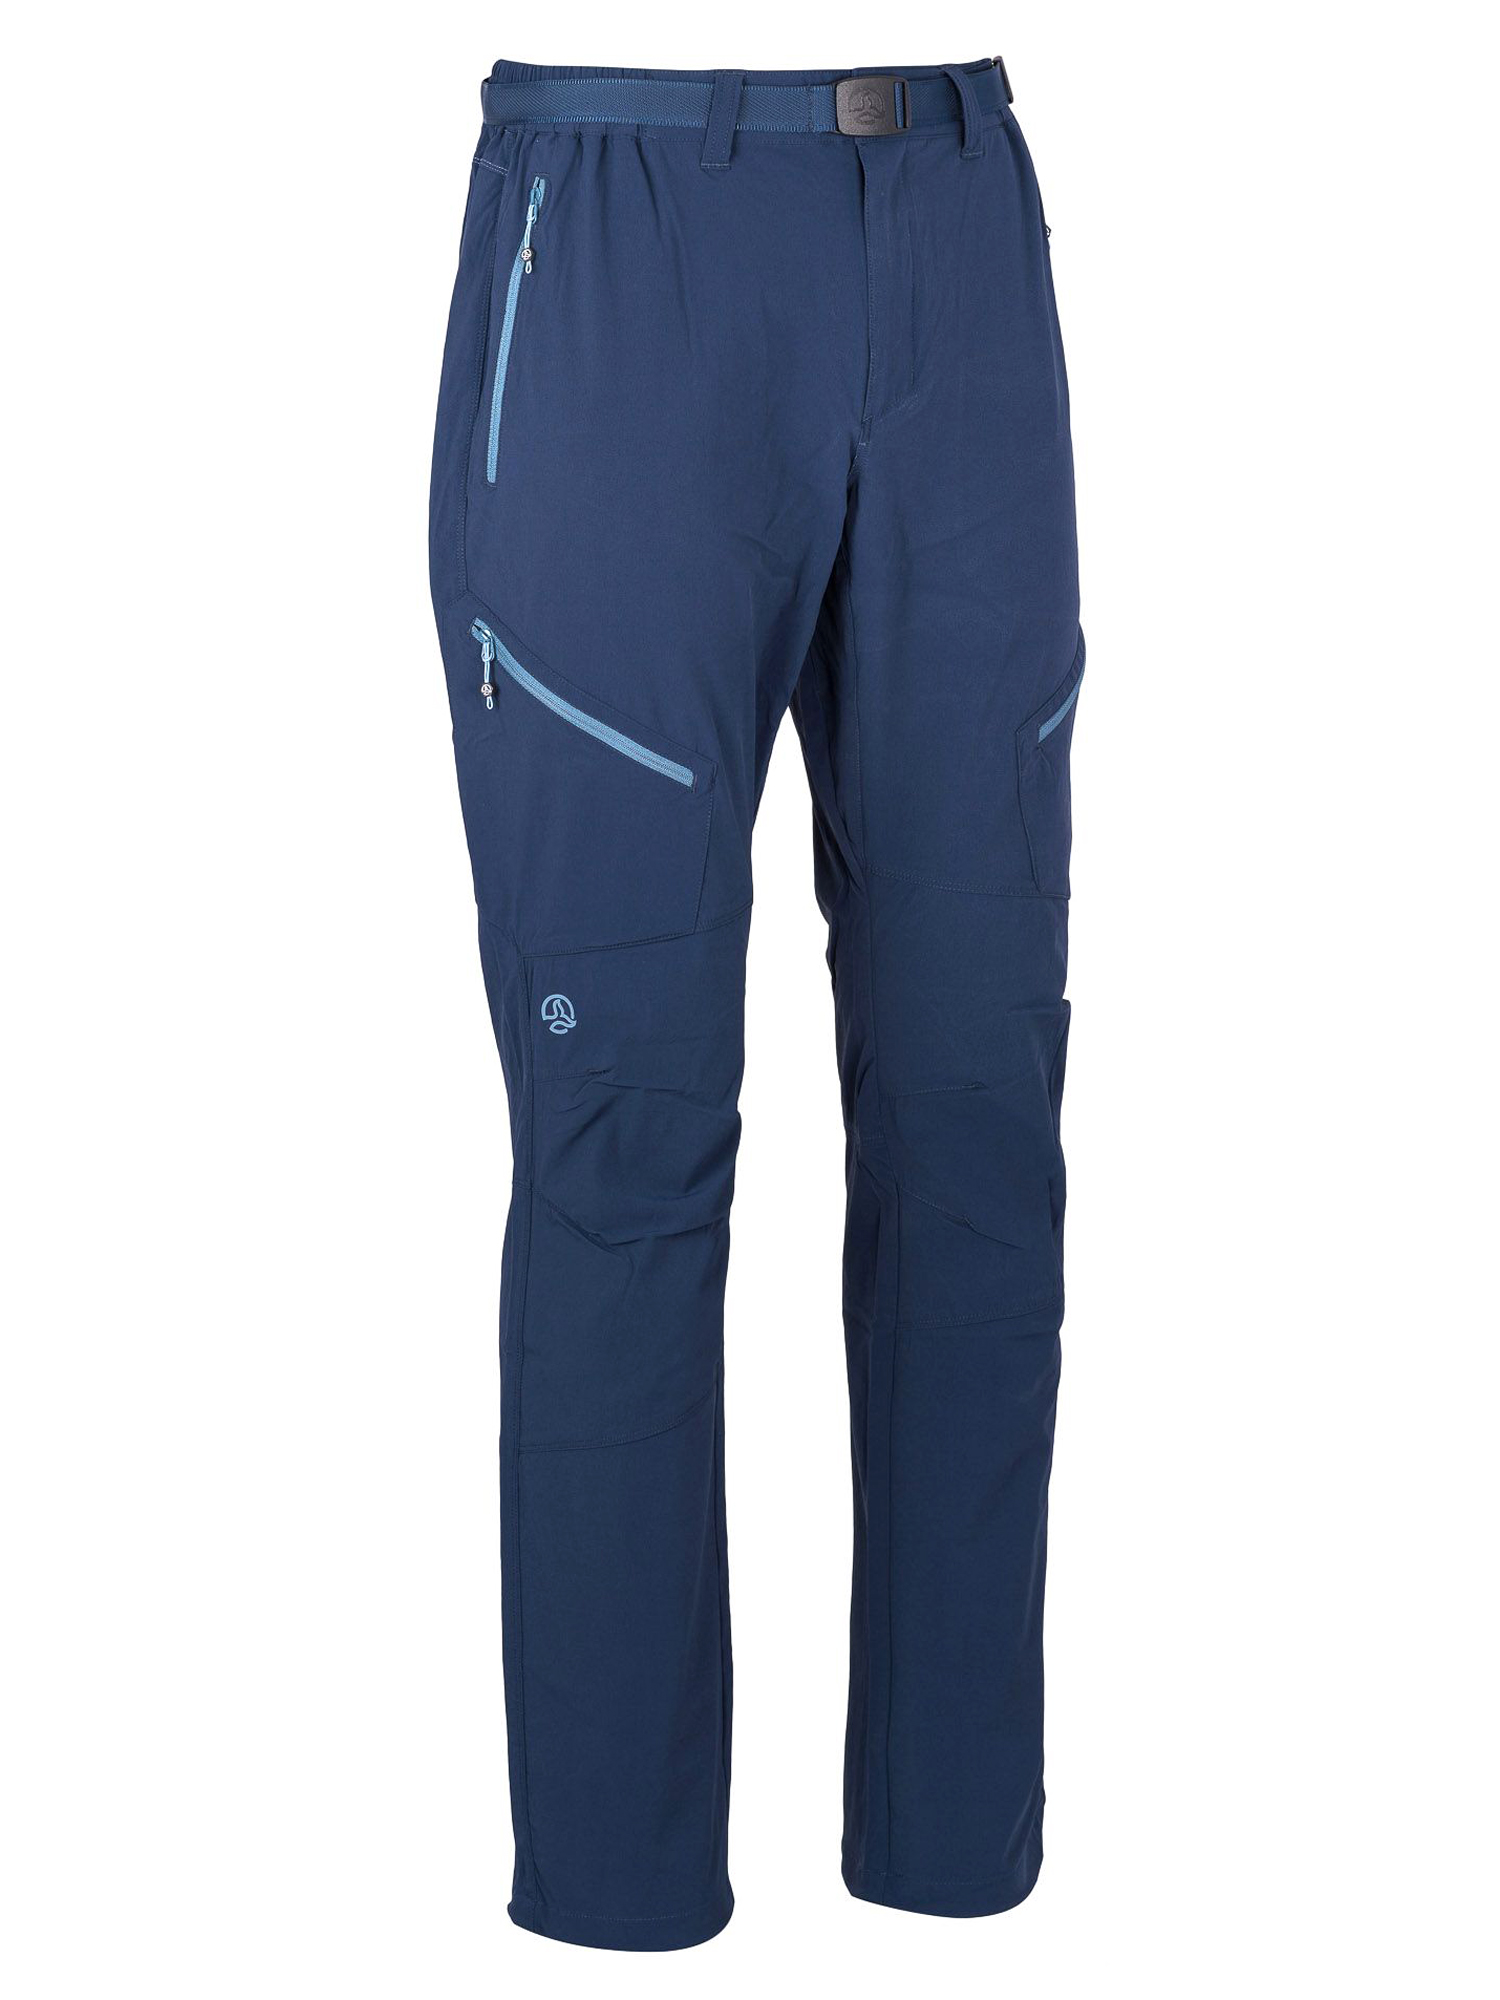 фото Спортивные брюки мужские ternua torlok pt m синие l